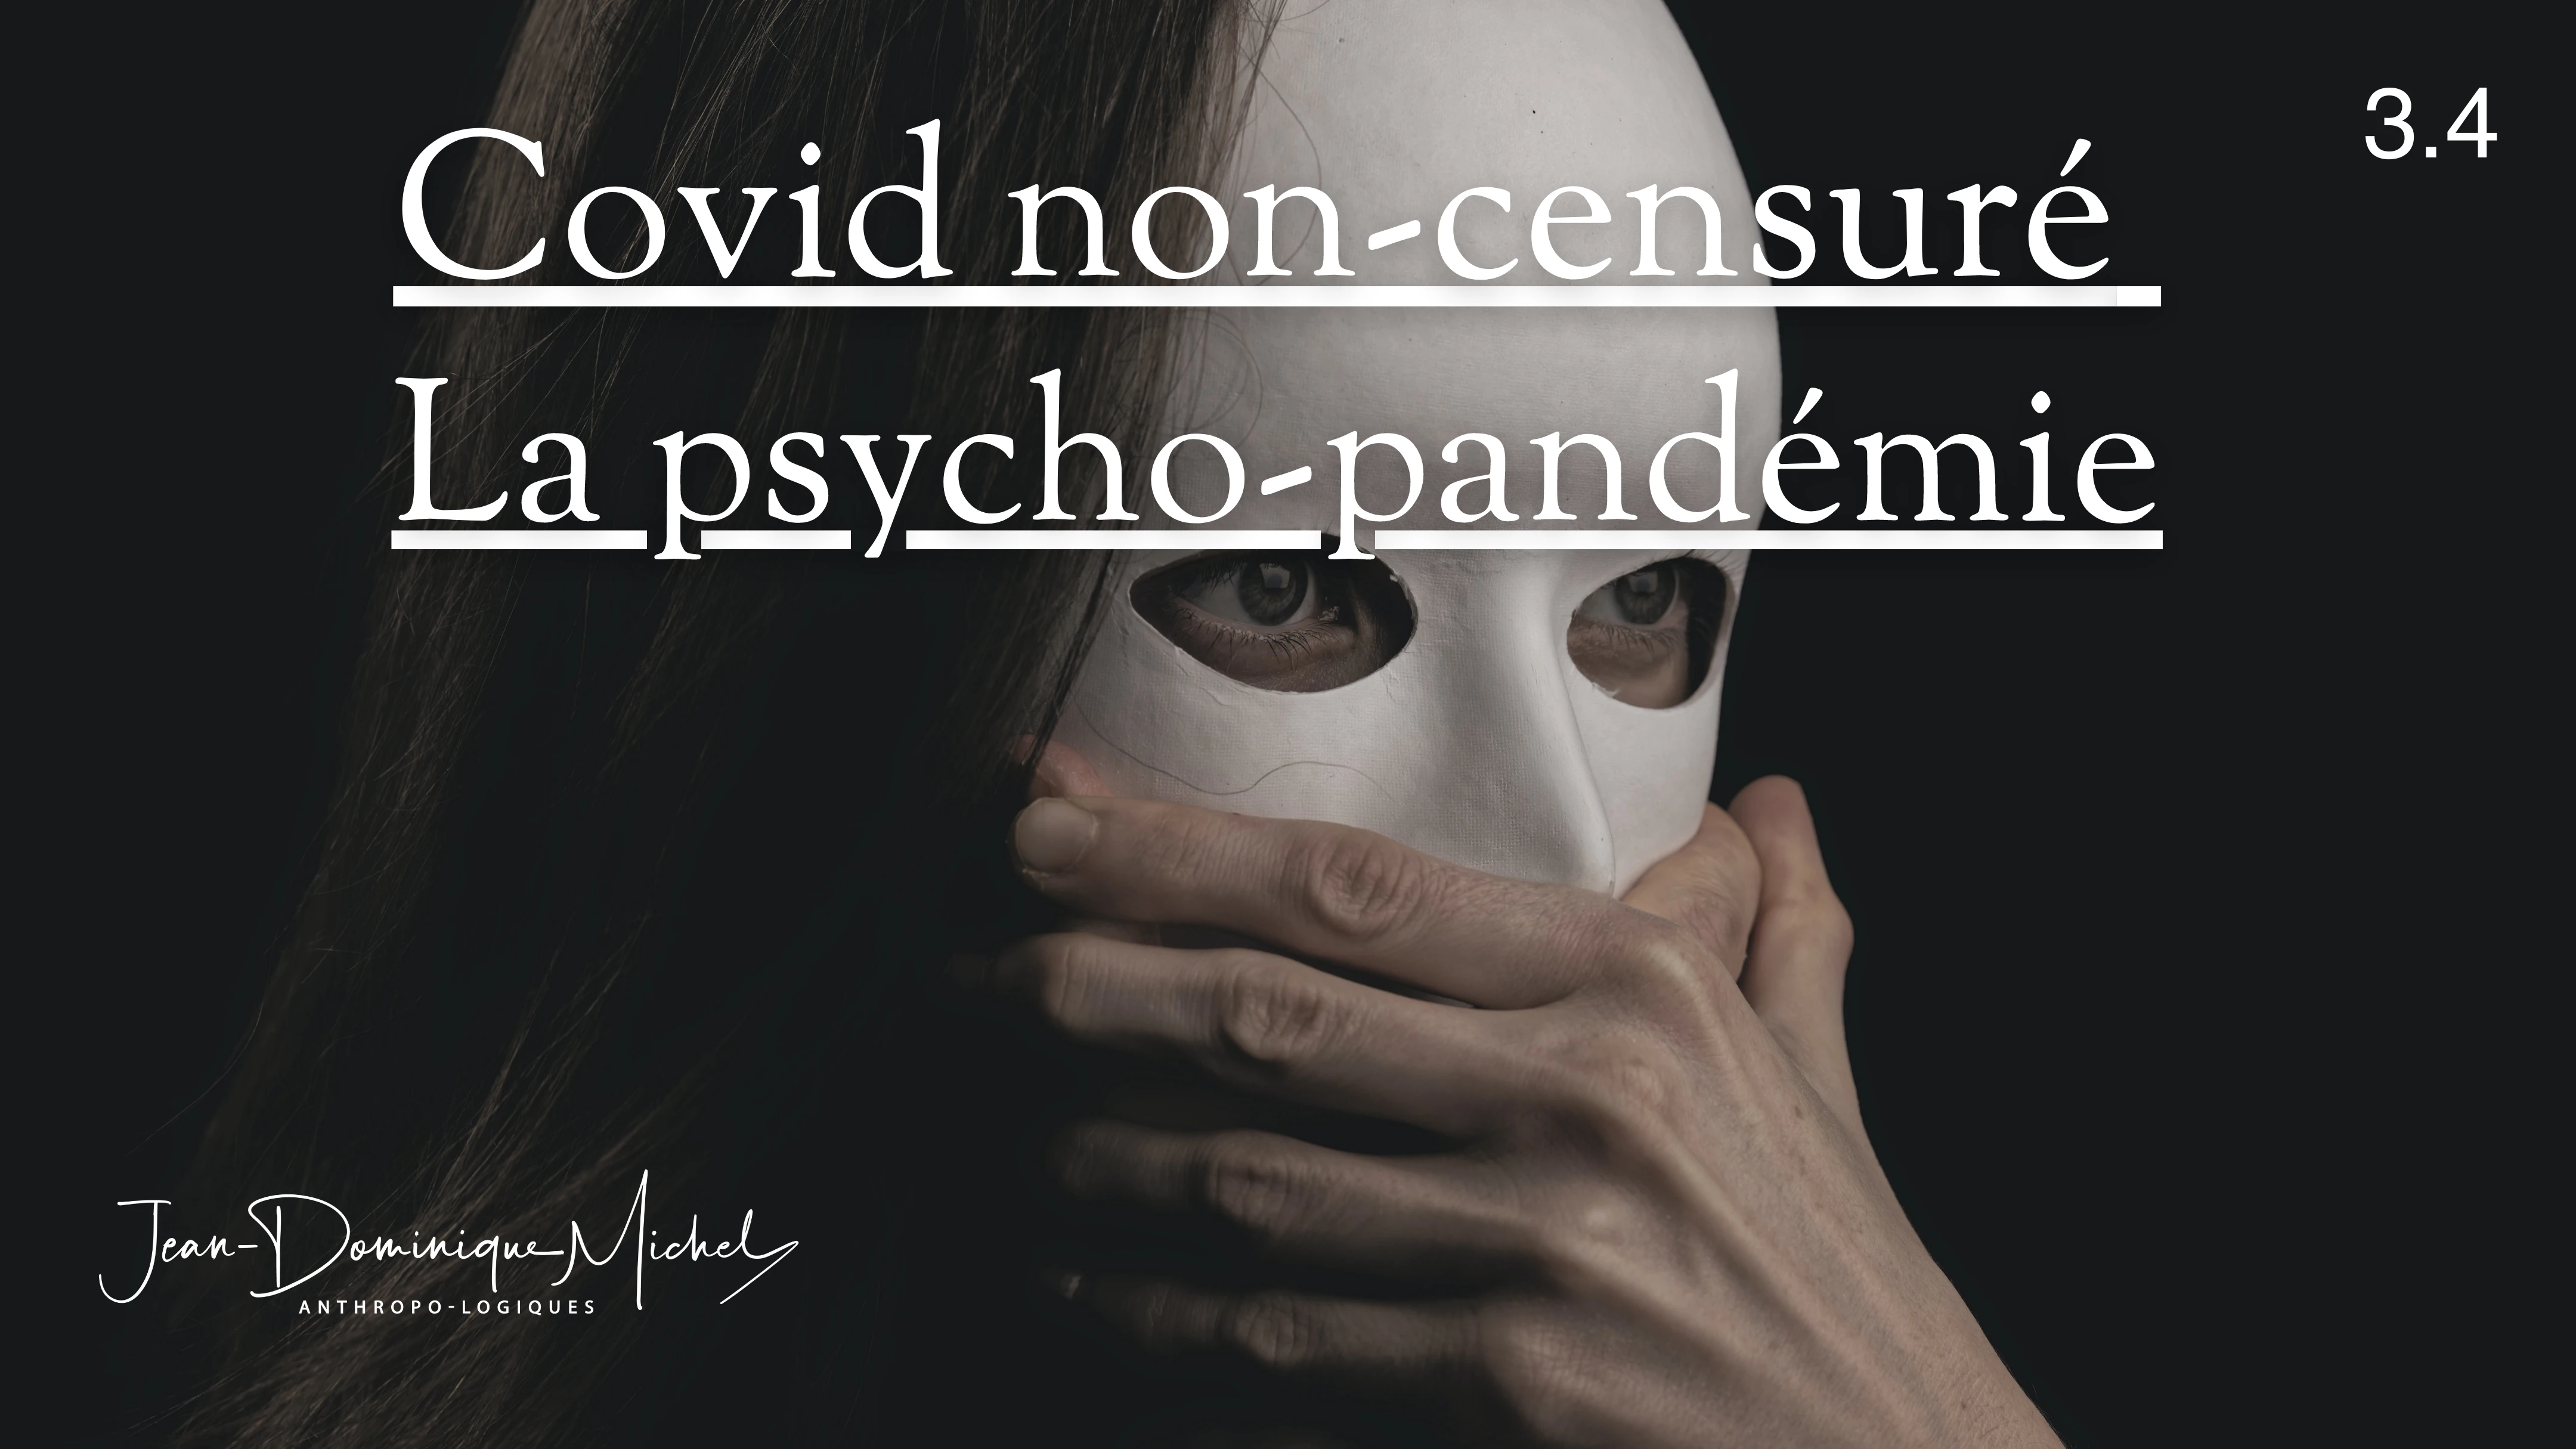 3.4 Covid non-censuré : la psycho-pandémie